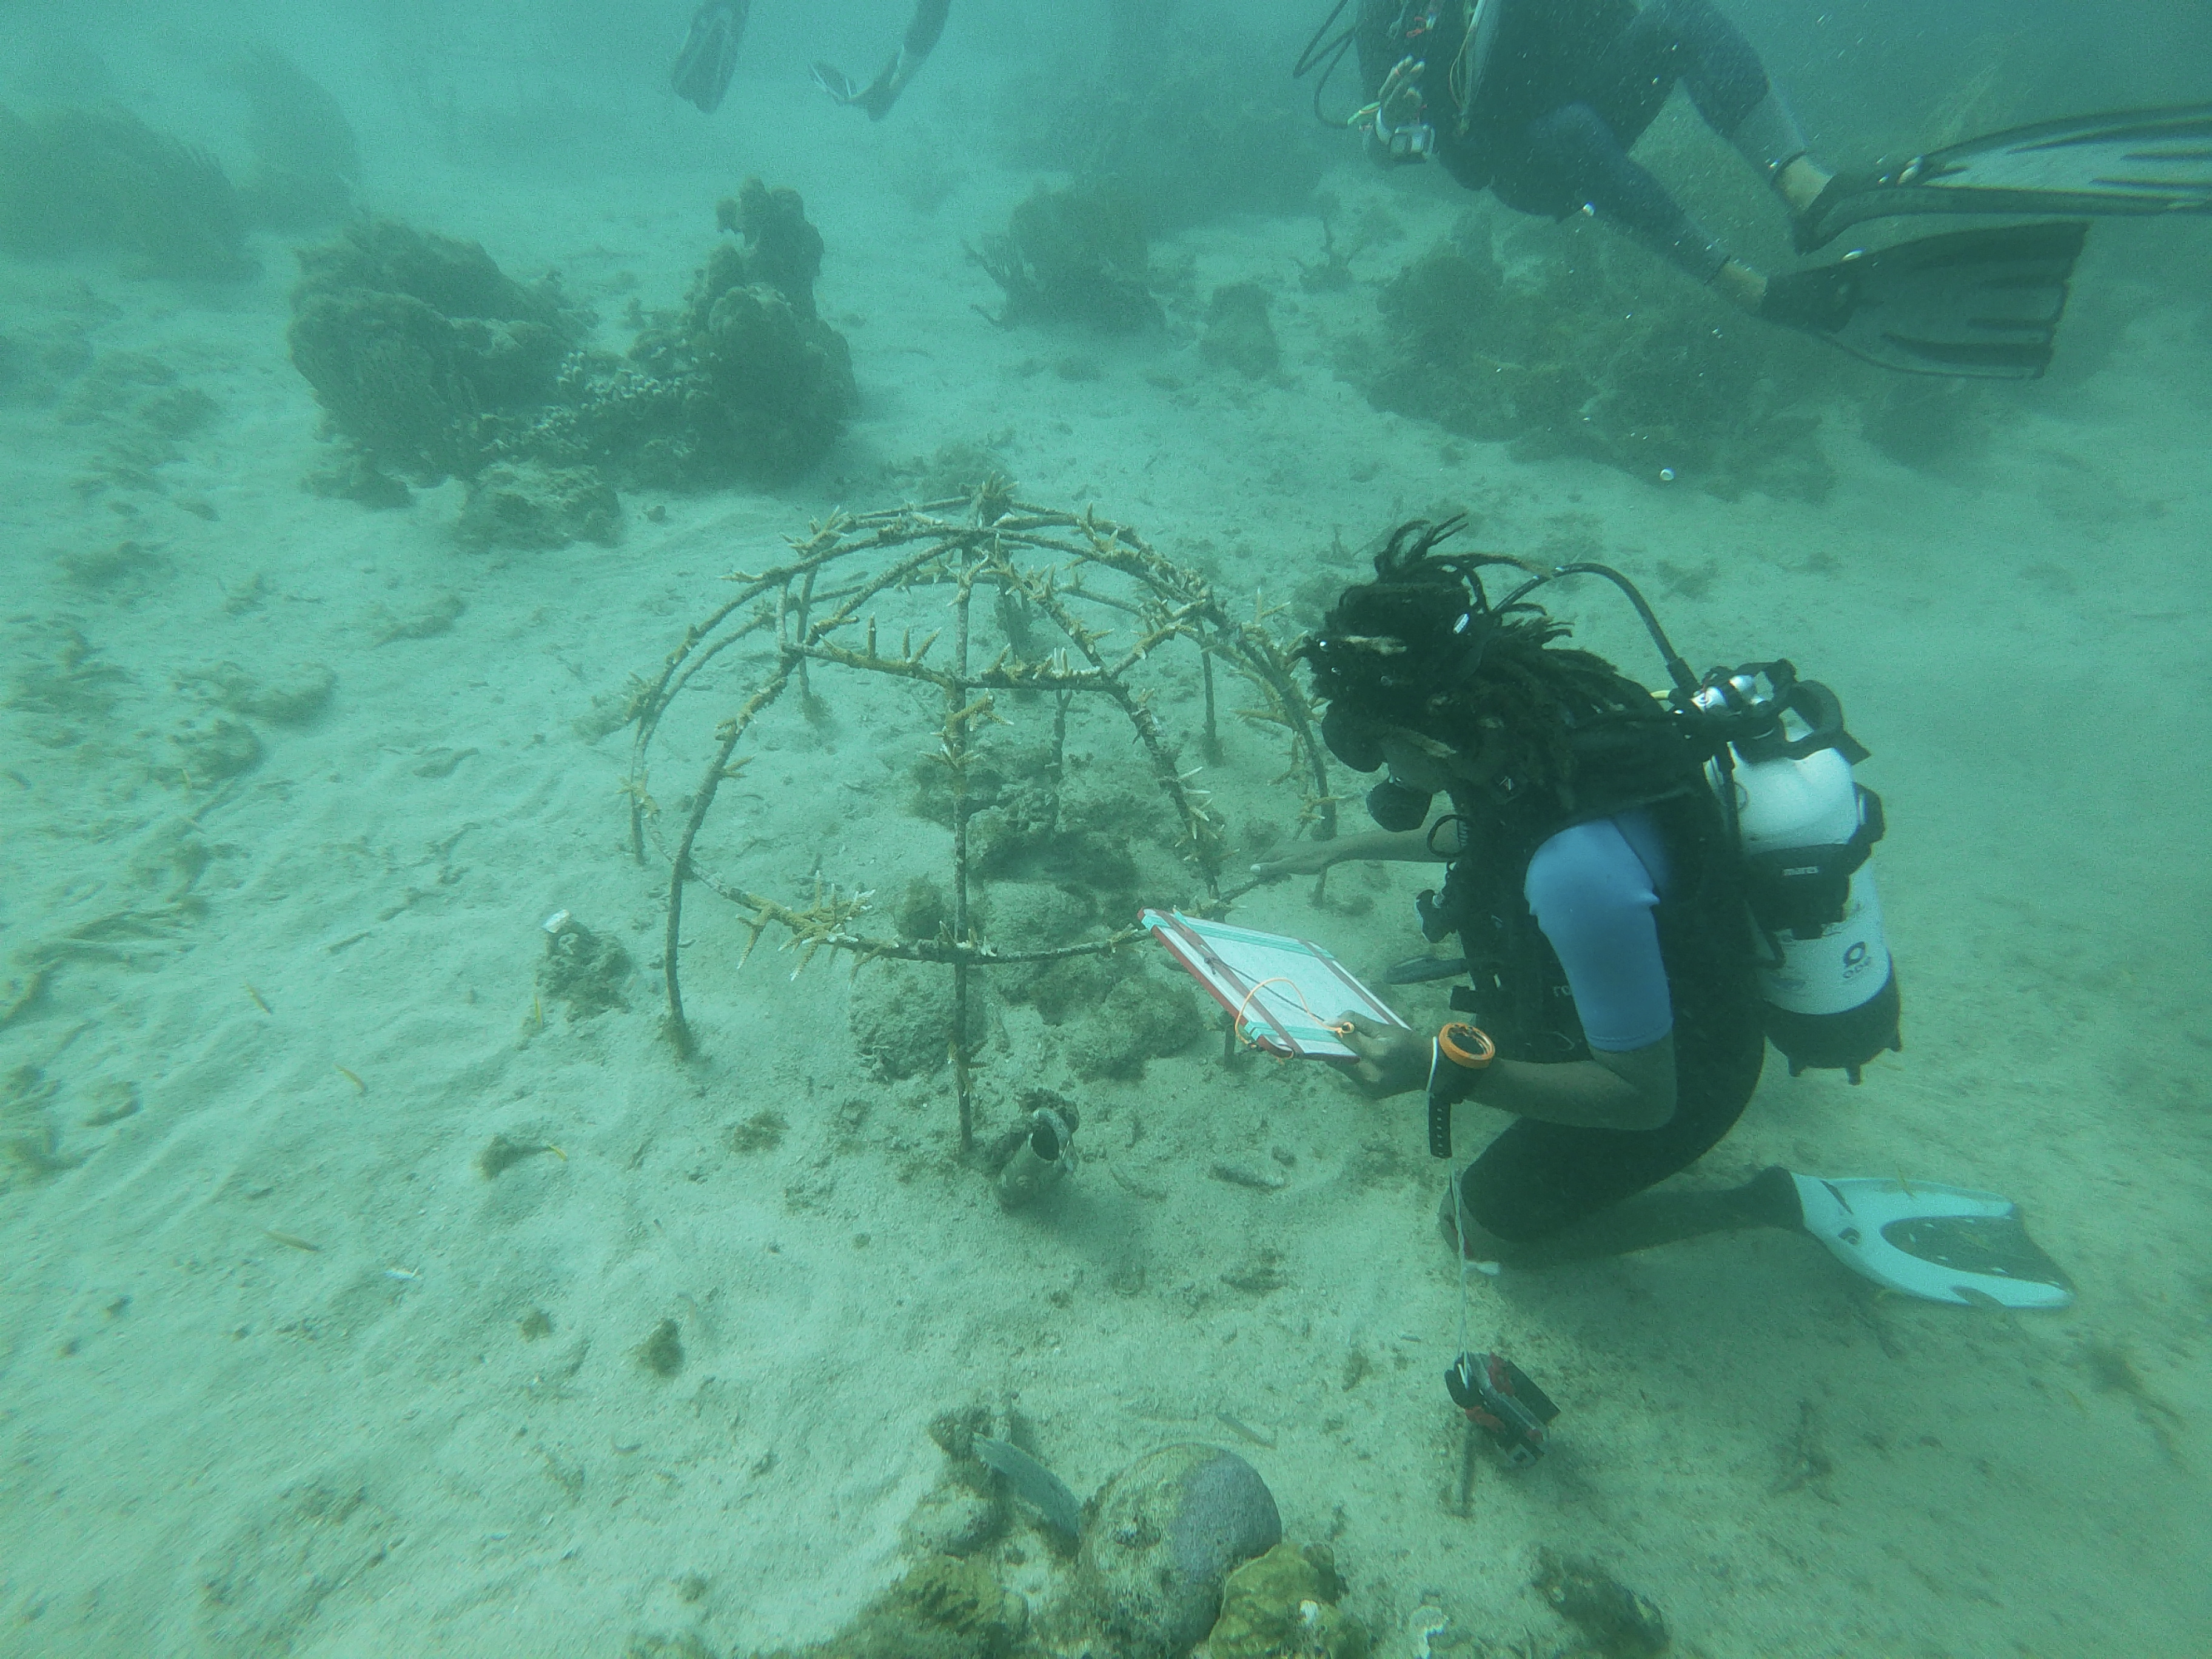     À Sainte-Luce, les coraux Cornes de Cerf n’ont pas survécu

